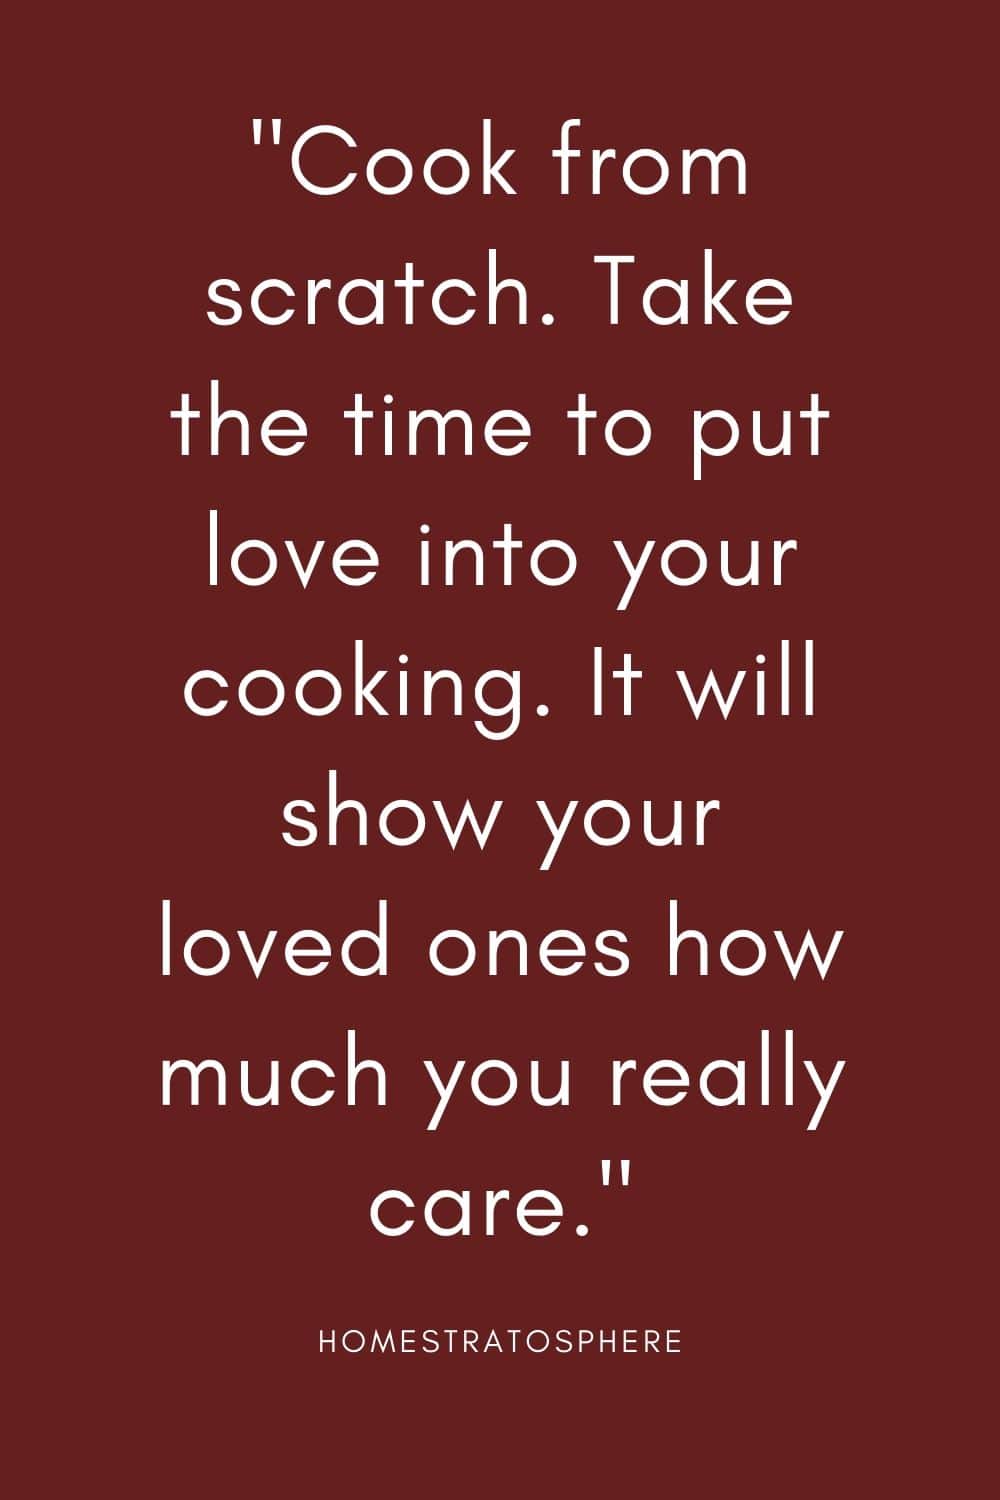 “从零开始做饭。花点时间把爱倾注到你的烹饪中。这会让你爱的人知道你有多在乎他们。”